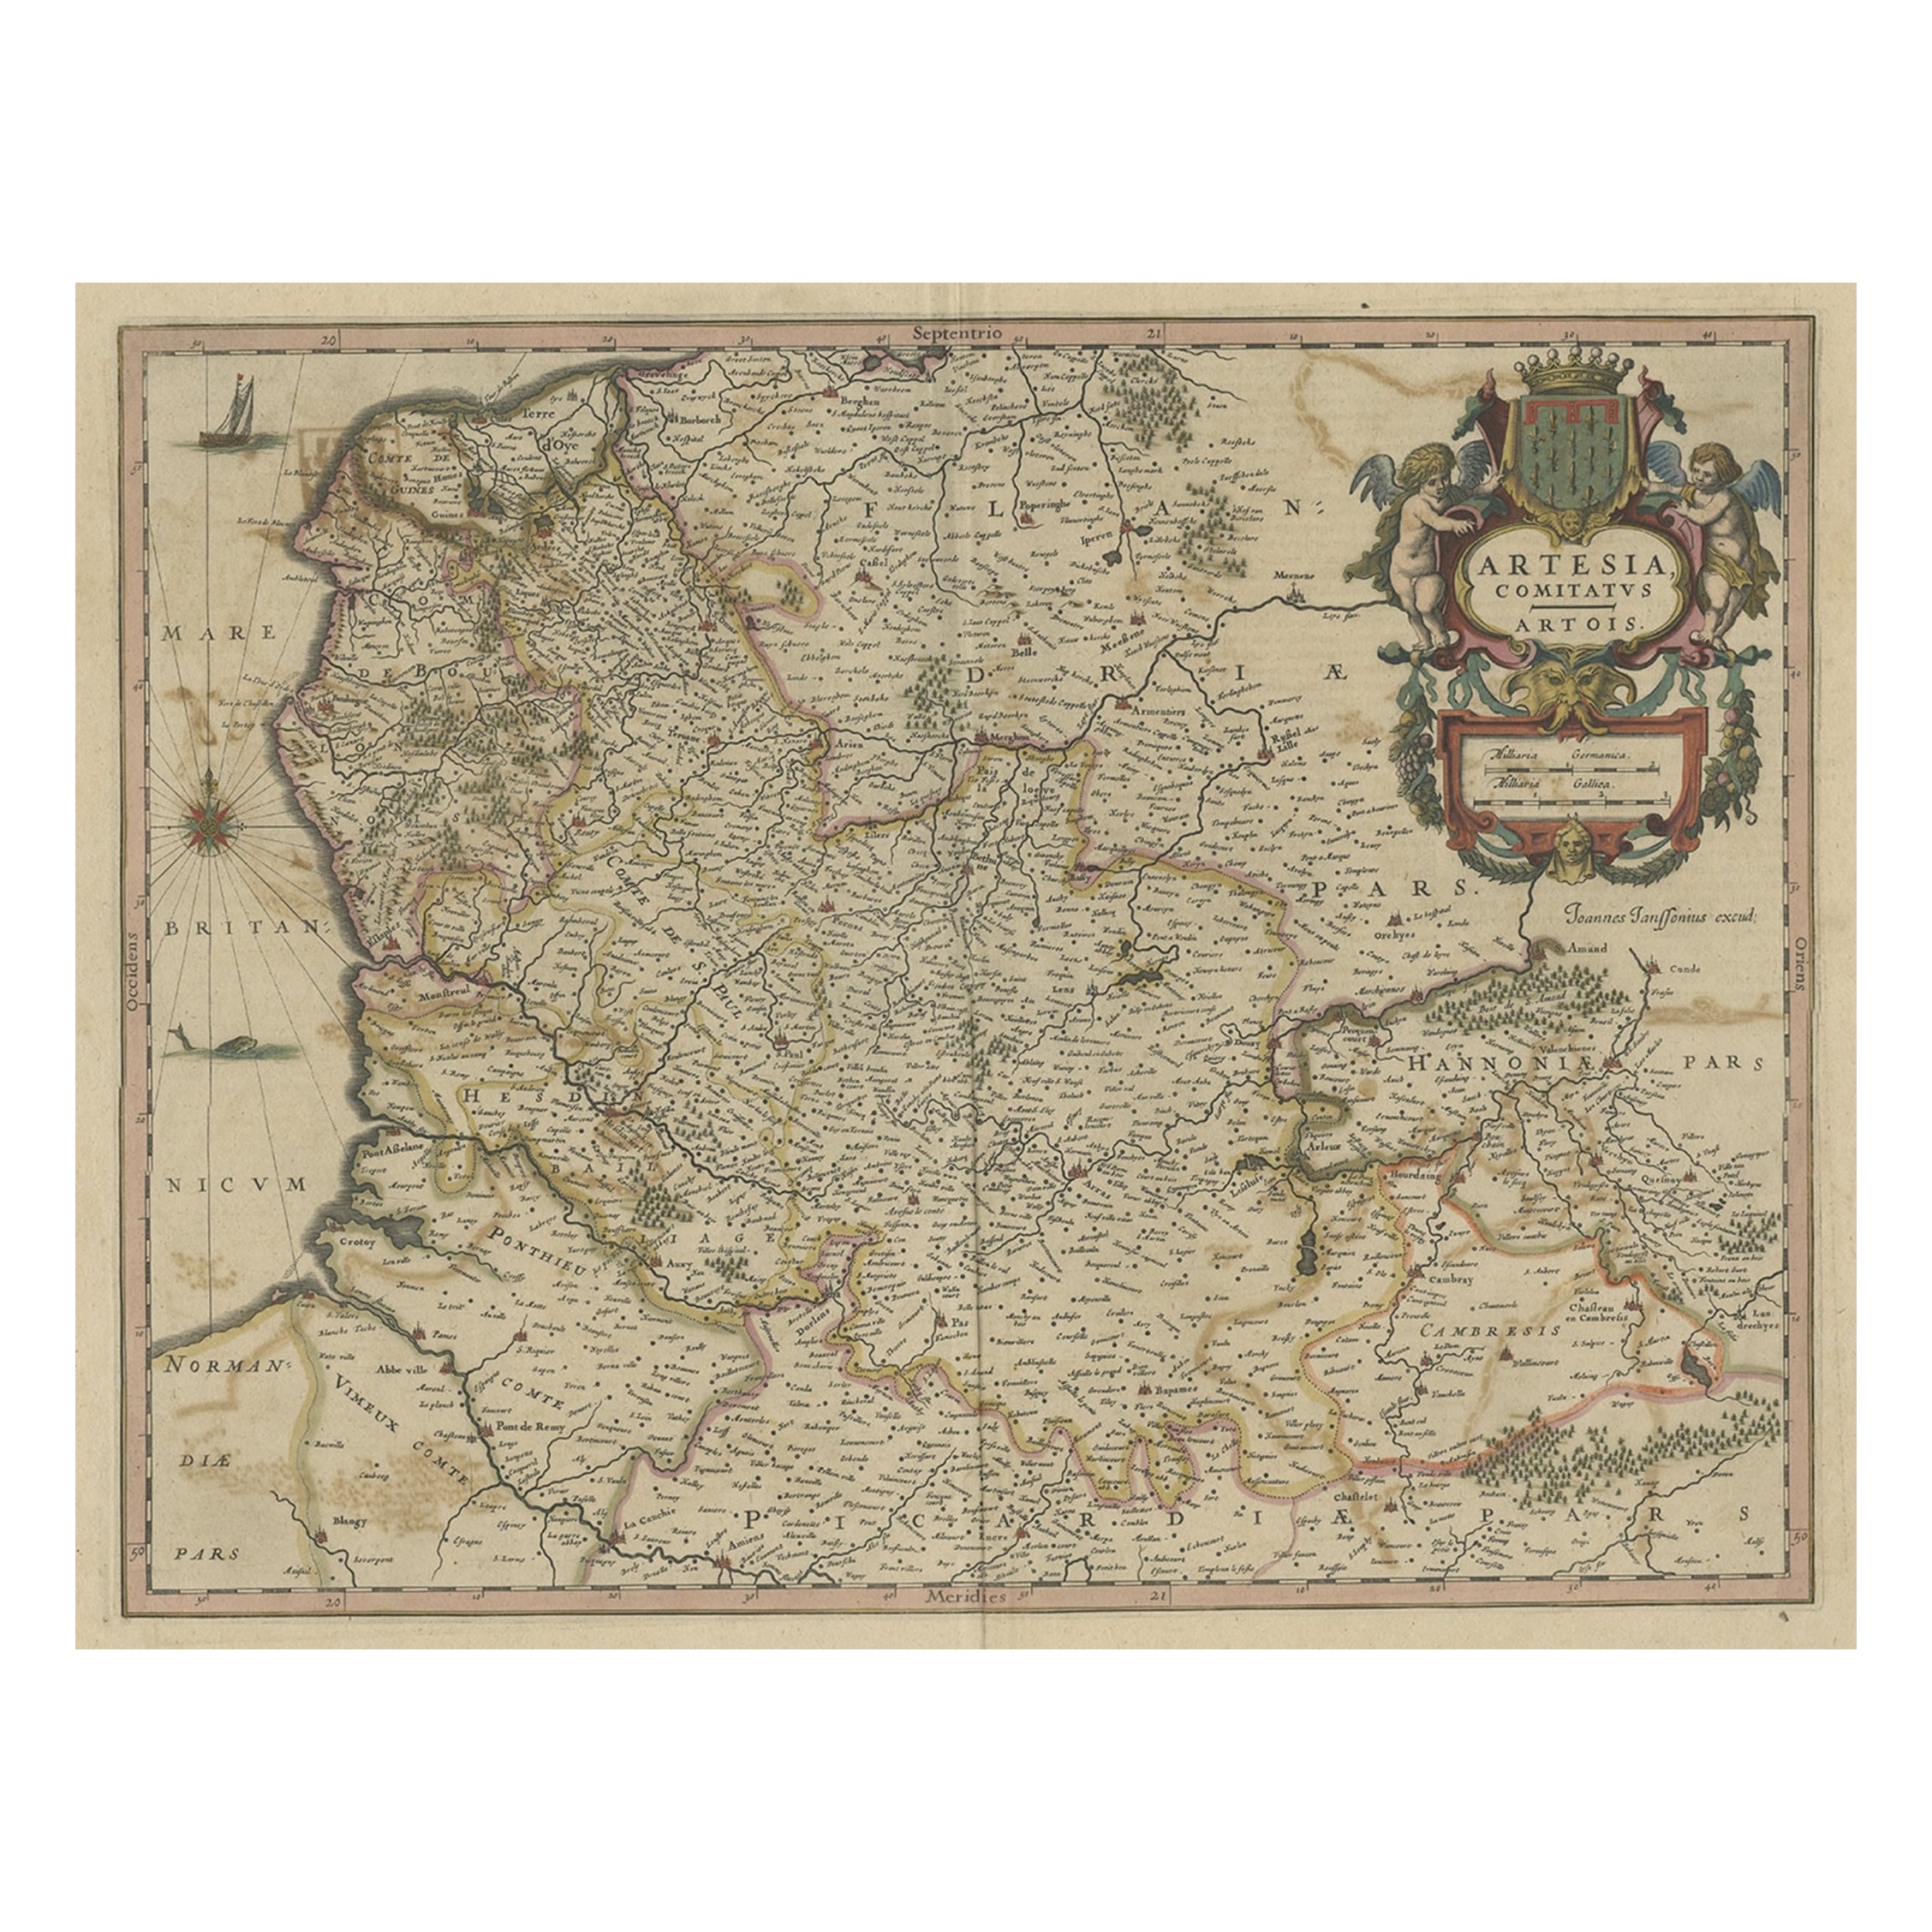 Original Hand-Colored Antique Map of Artois or Artesia, France, ca.1650